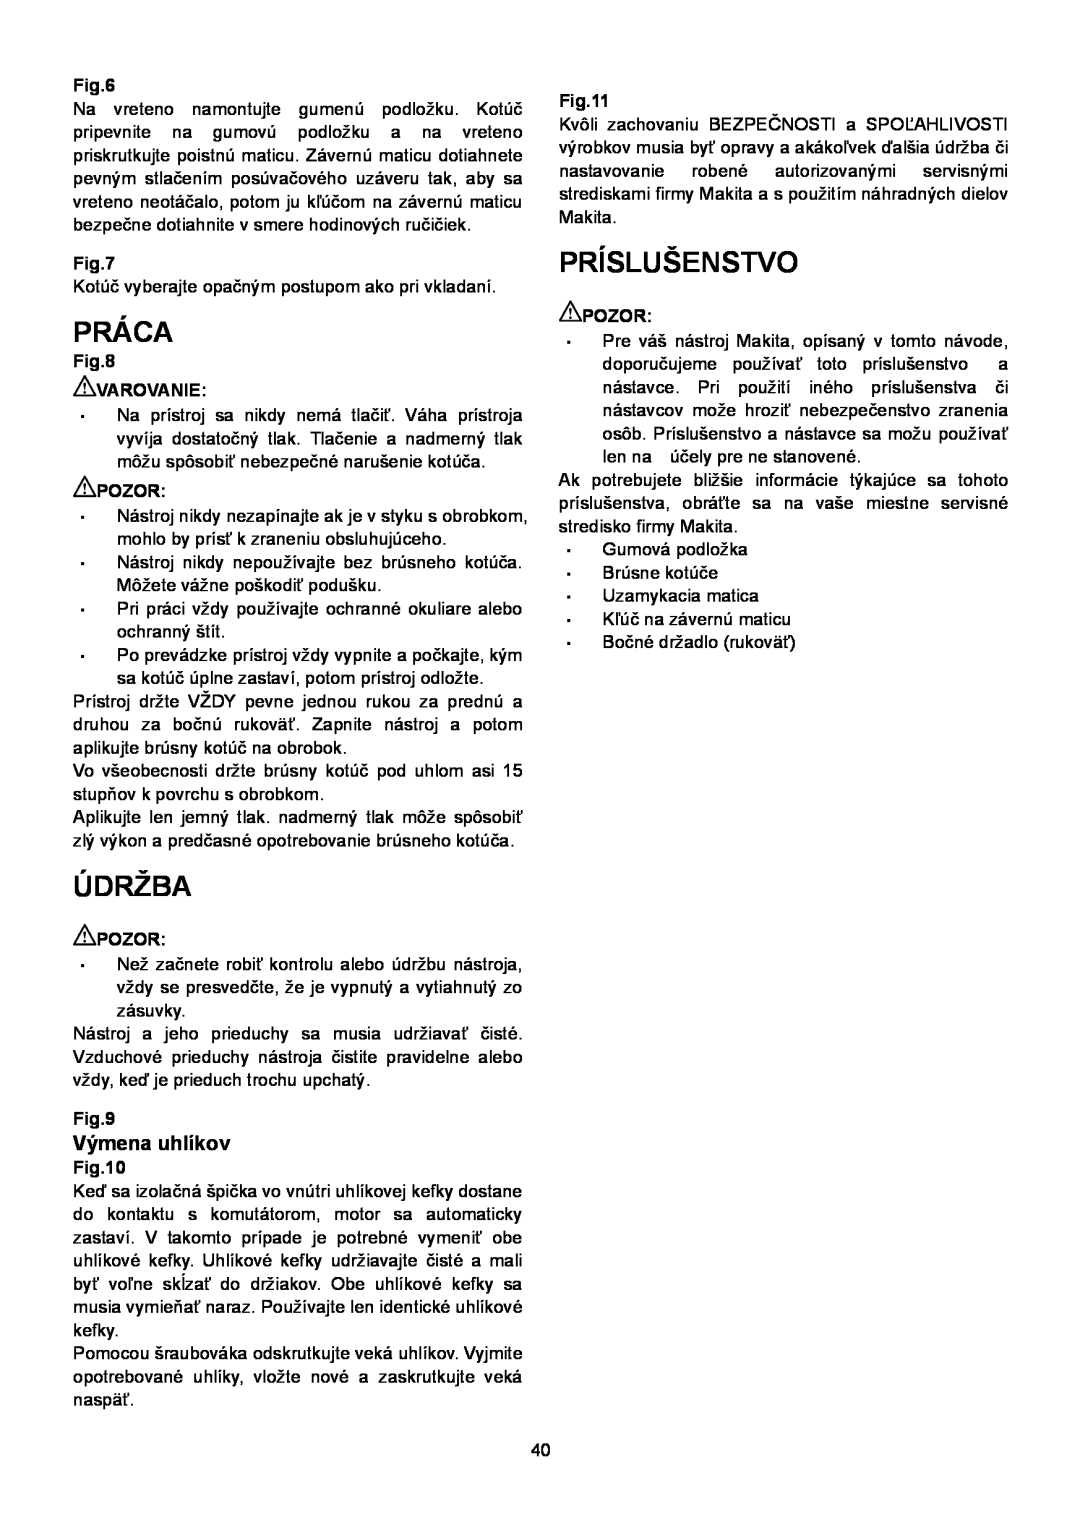 Makita SA7000C instruction manual Práca, Údržba, Príslušenstvo, Výmena uhlíkov 